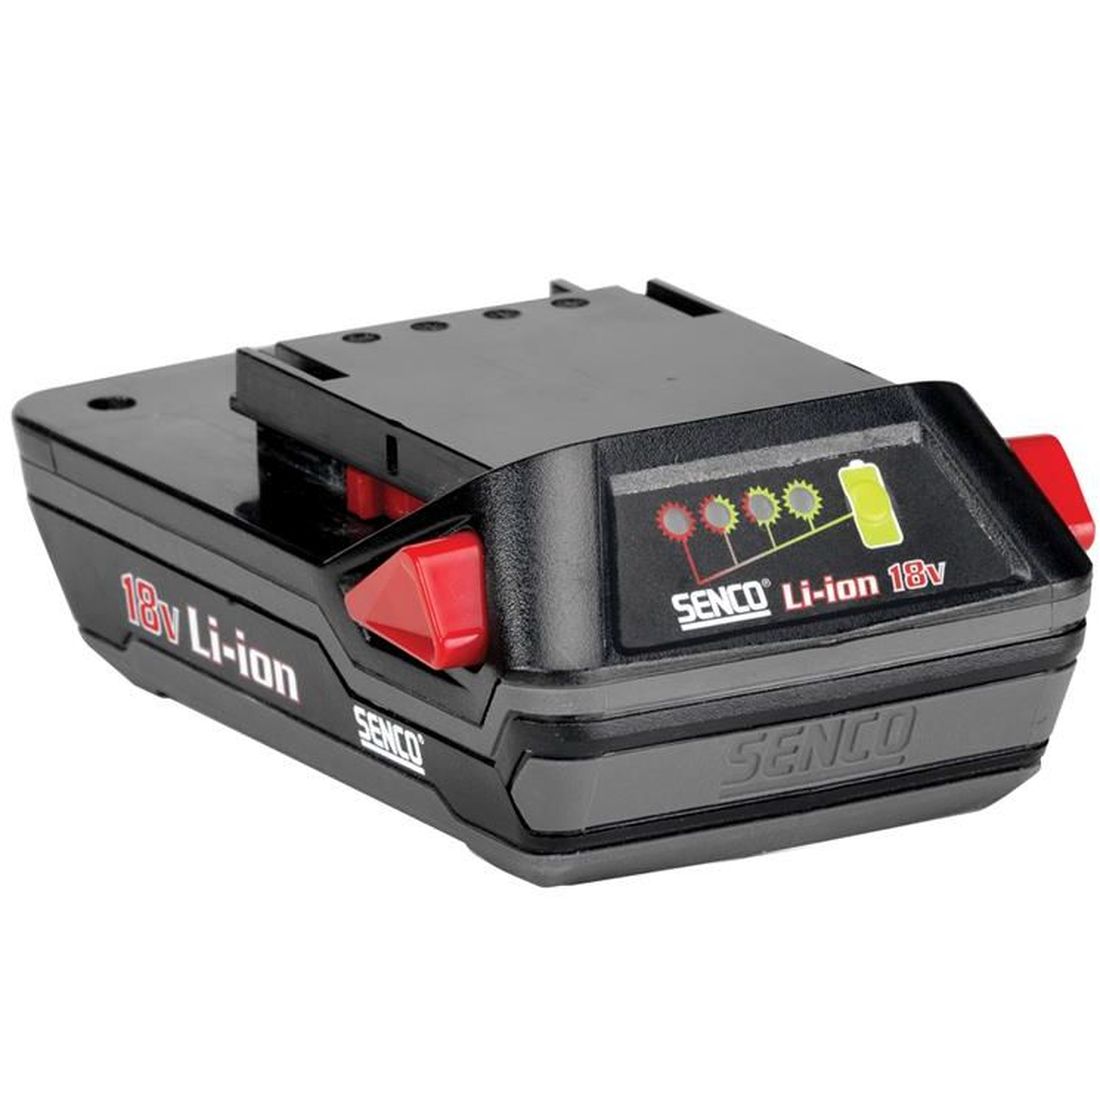 Senco VB0194 Li-ion Battery 18V 3.0Ah   